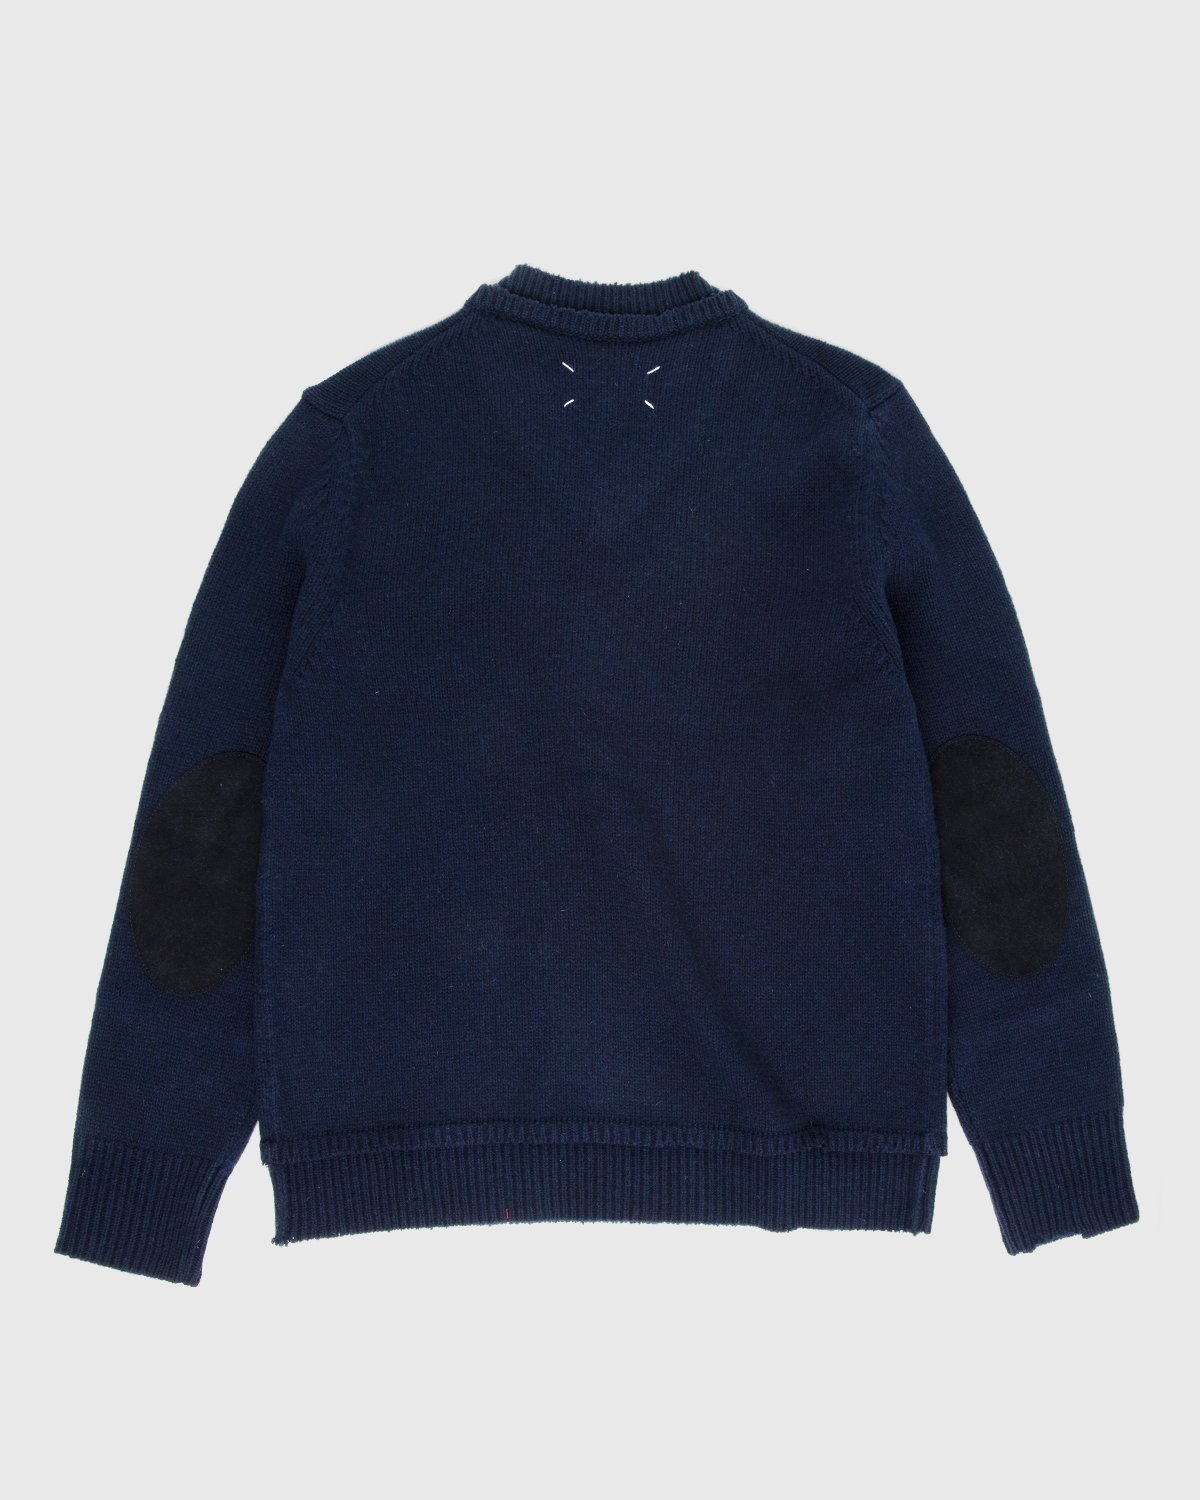 Maison Margiela - Sweater Navy - Clothing - Blue - Image 2